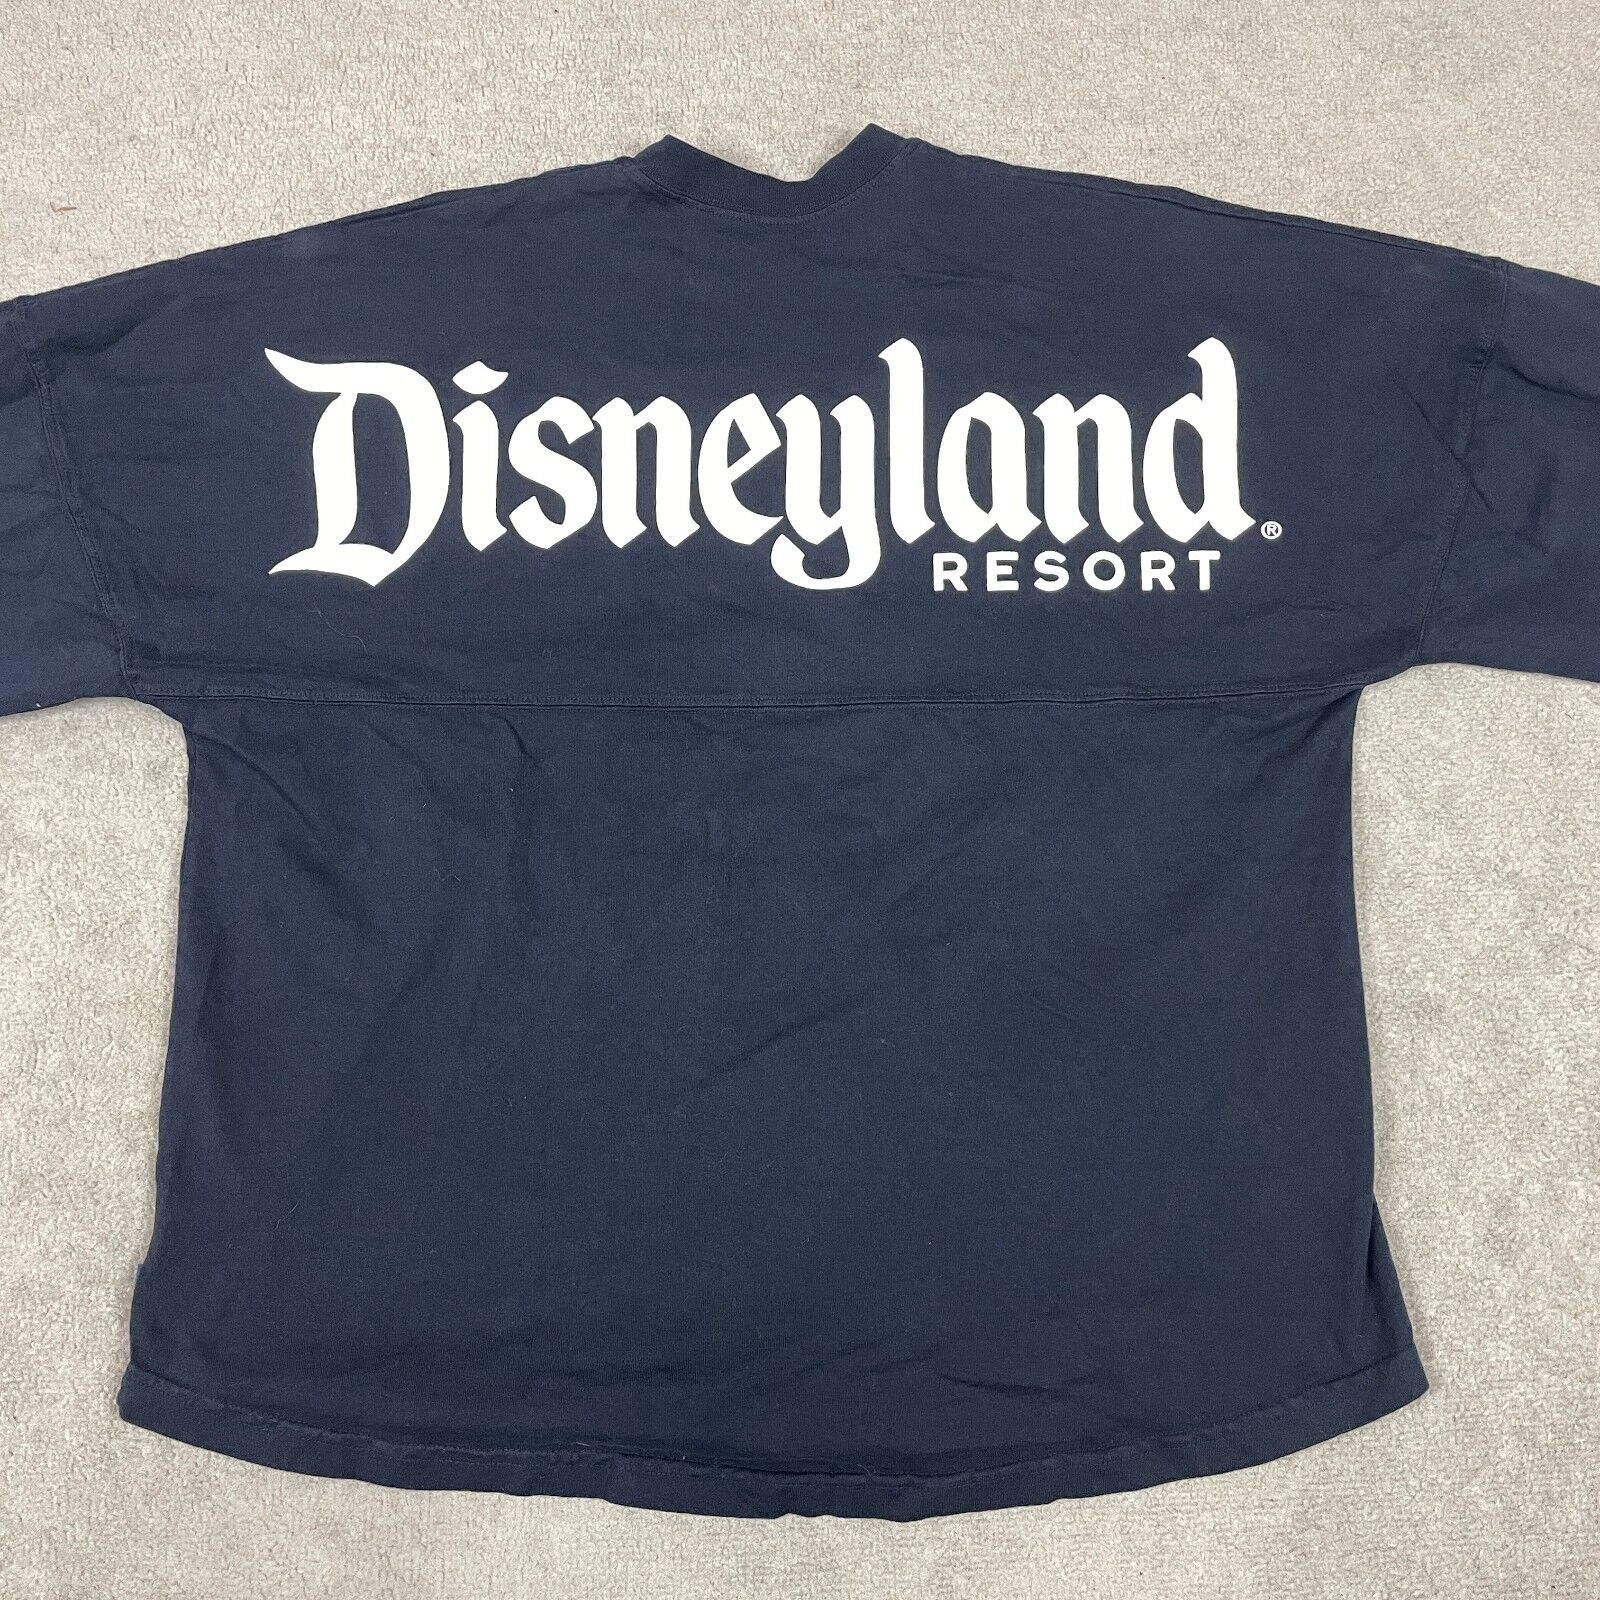 Disneyland Spirit Jersey XL Blue Long Sleeve Shirt Disney Parks Resort Spellout